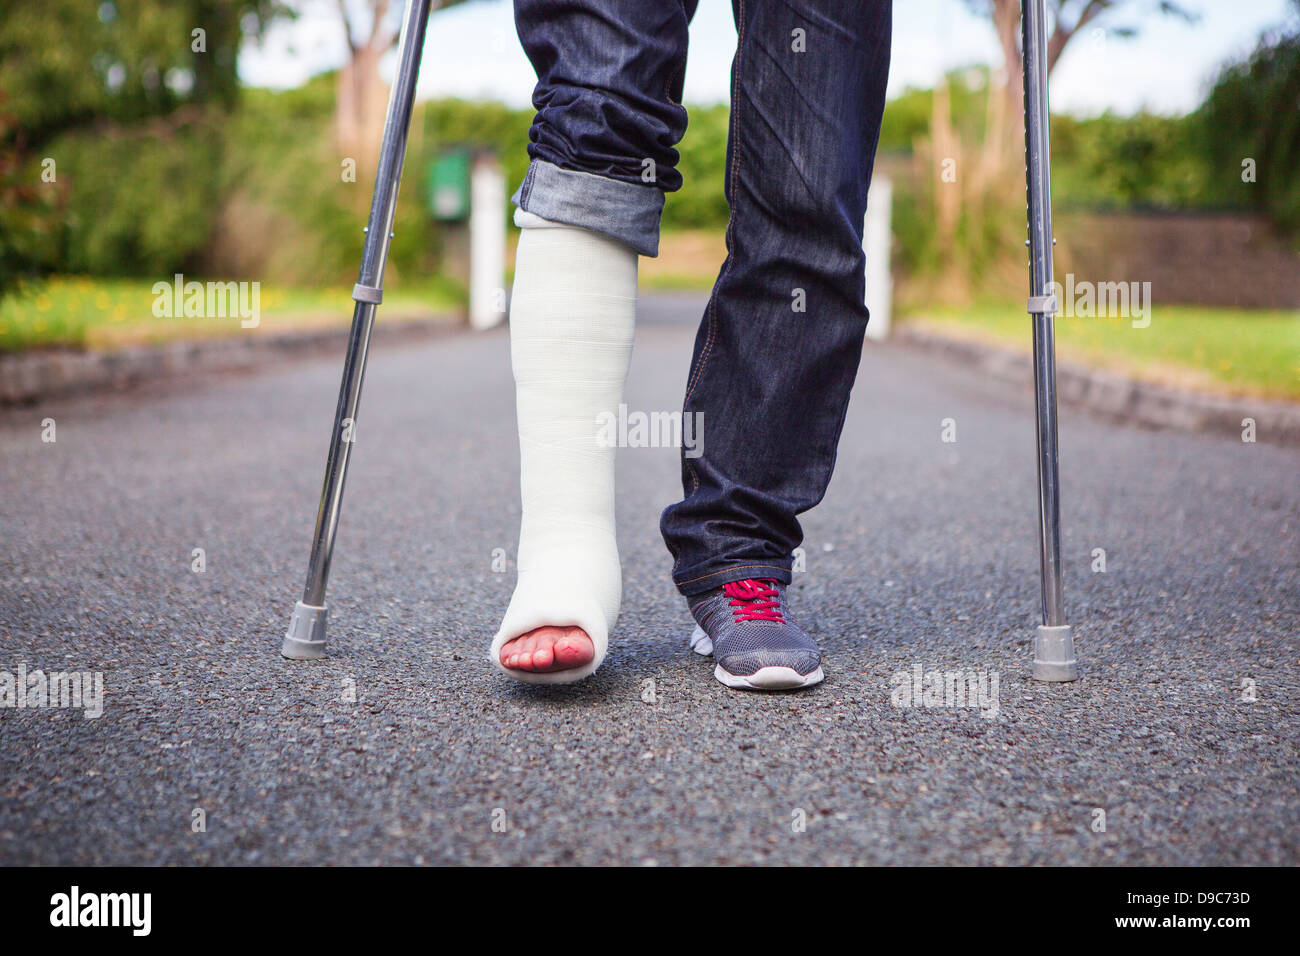 Bild von jemandem stehen mit Krücken wegen gebrochenen Knöchel. Stockfoto